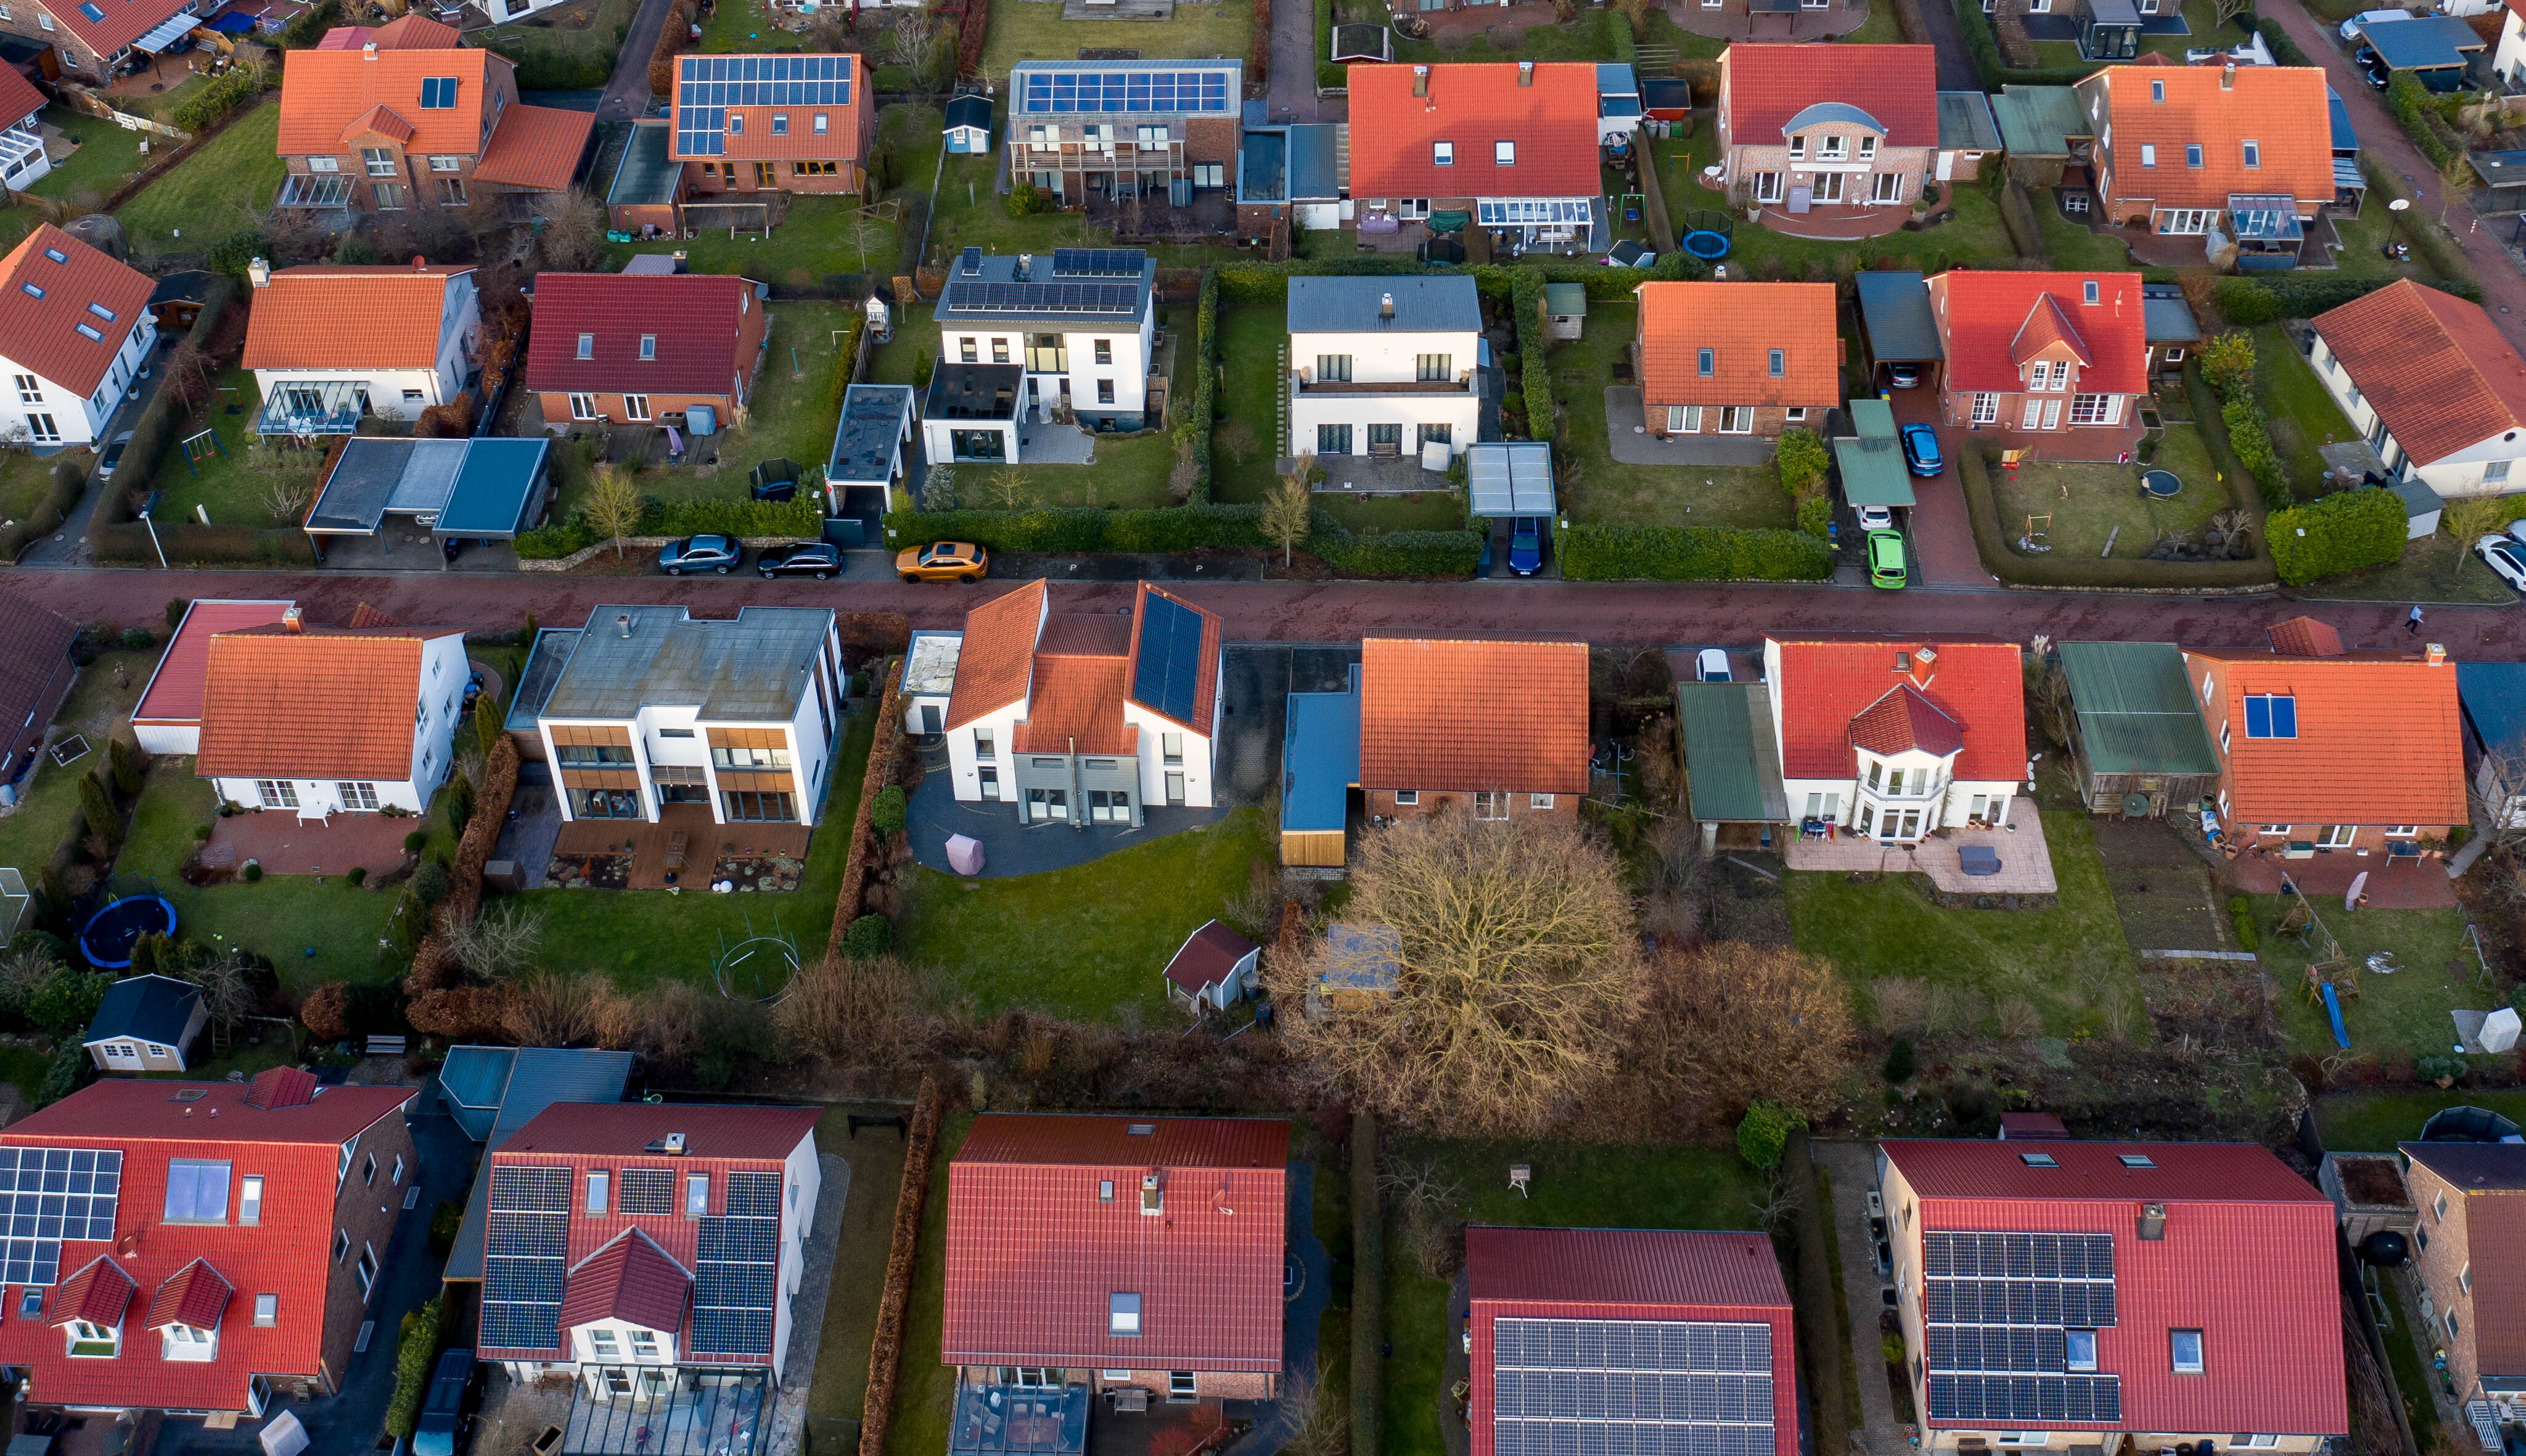 Luftbild einer Neubausiedlung mit Ein- und Zweifamilienhäusern in Kiel | picture alliance/dpa